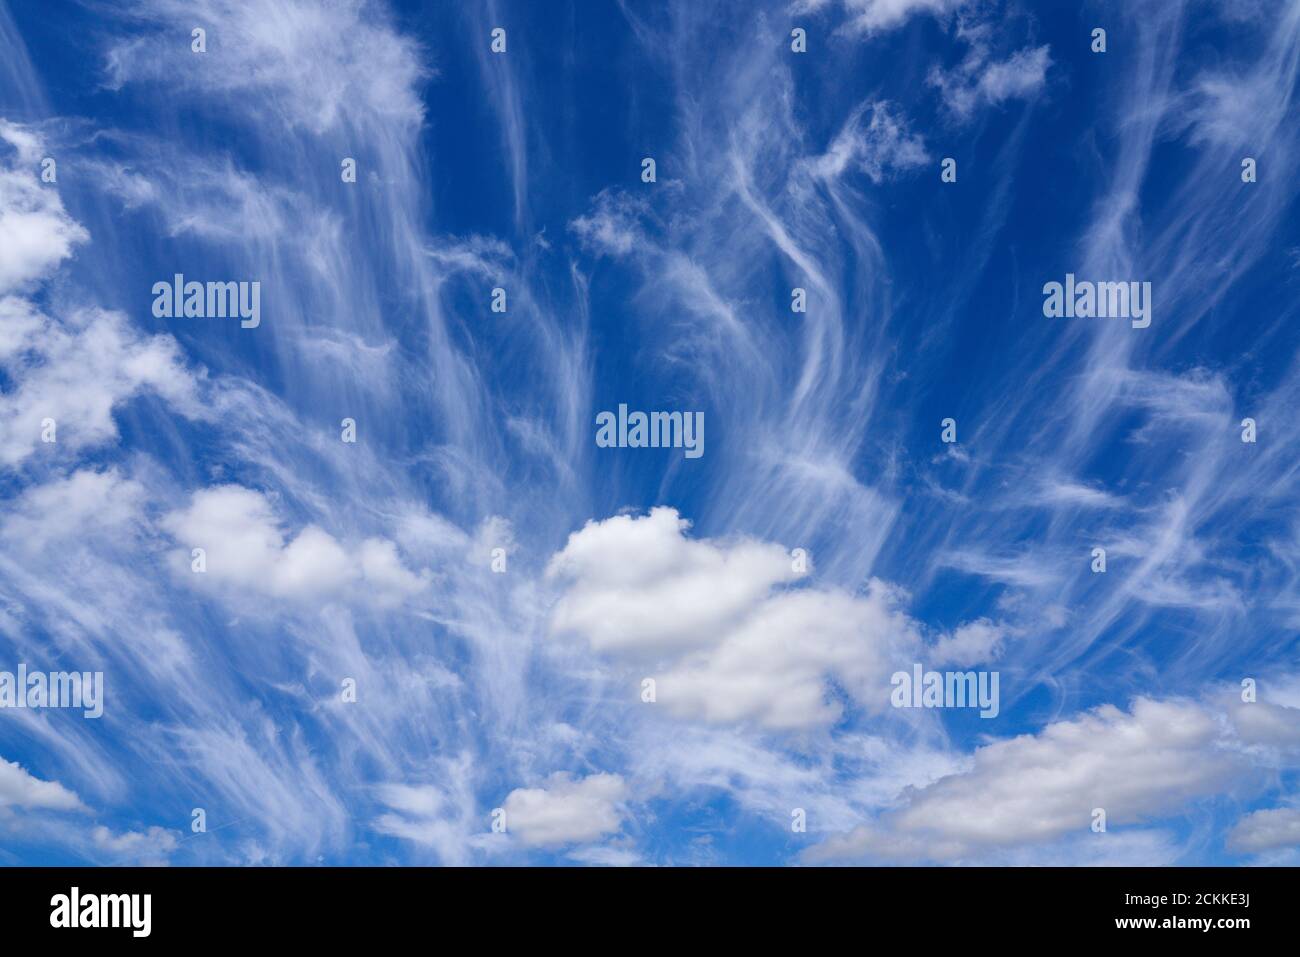 Cirrus nubes contra un cielo azul brillante que son la formación más alta de los principales tipos de nube compuesta totalmente de cristales de hielo Foto de stock